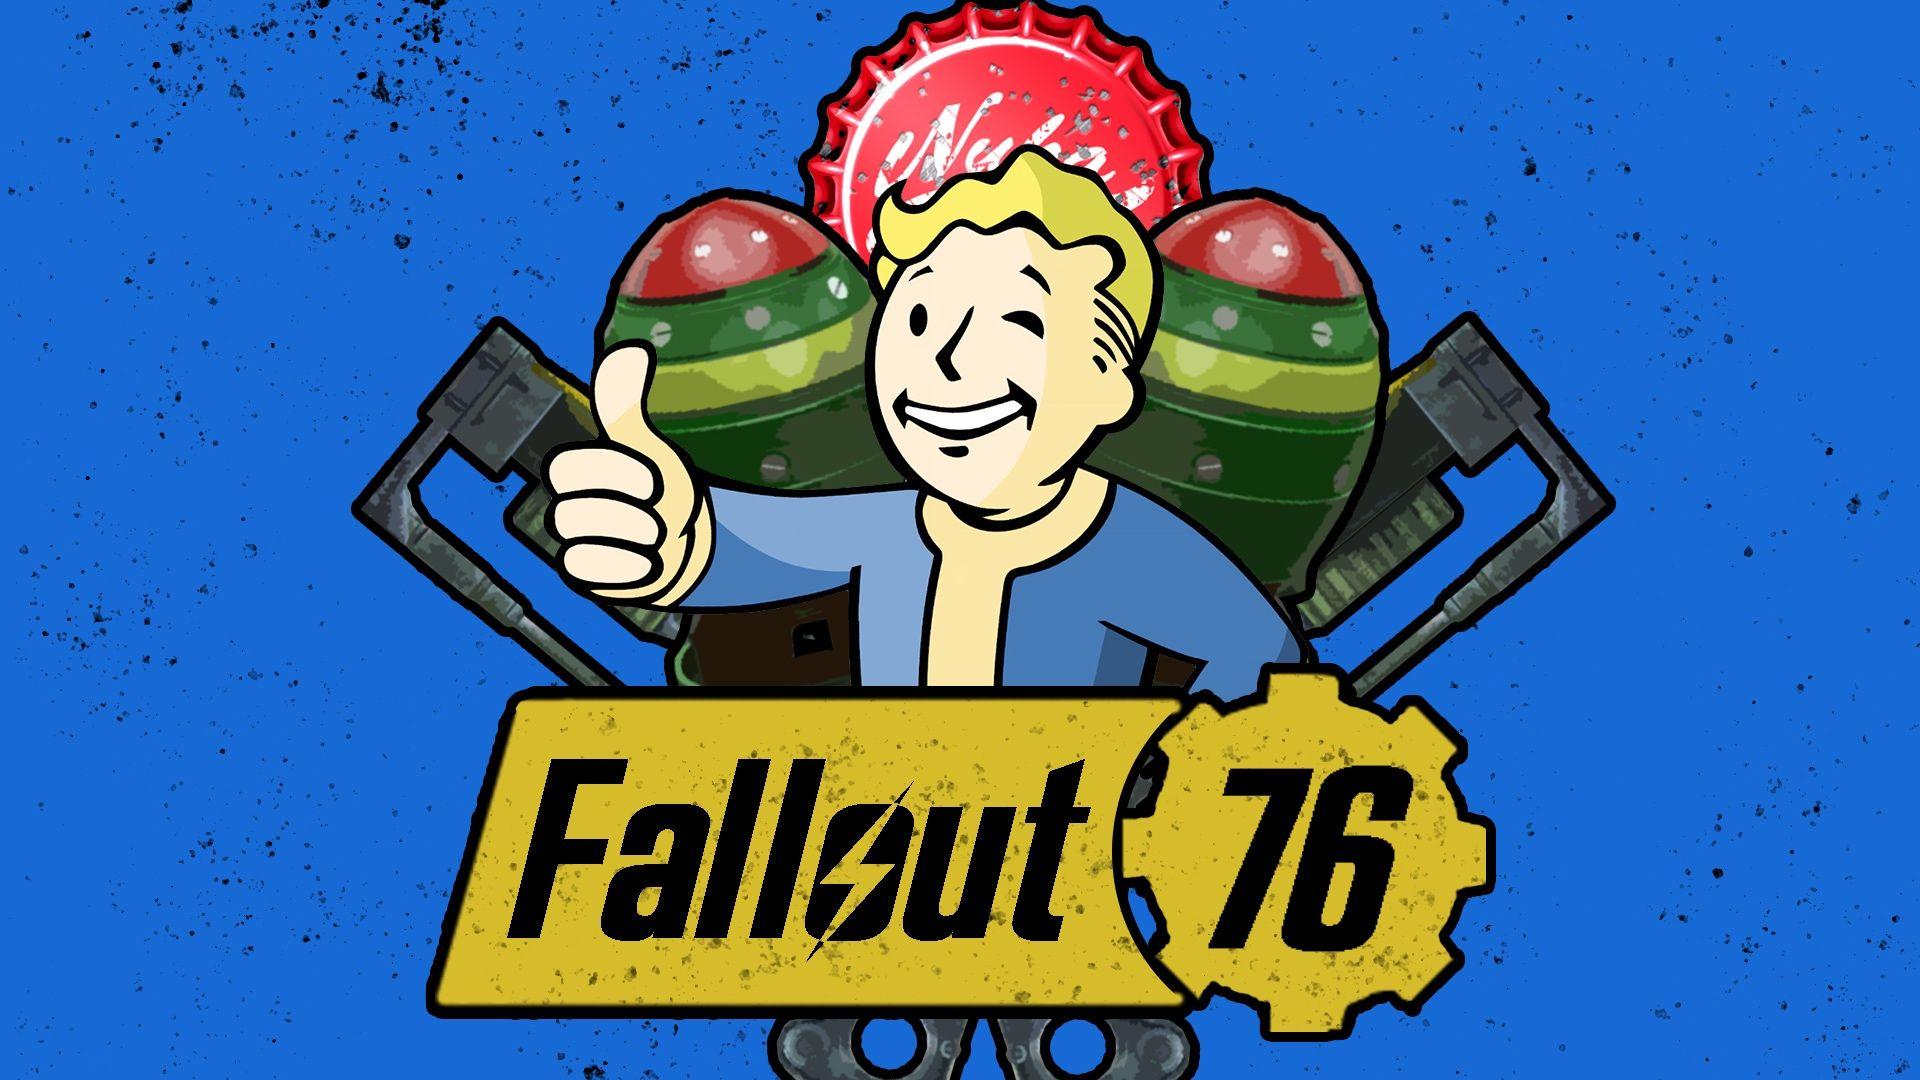 Fallout 76 Wallpaper